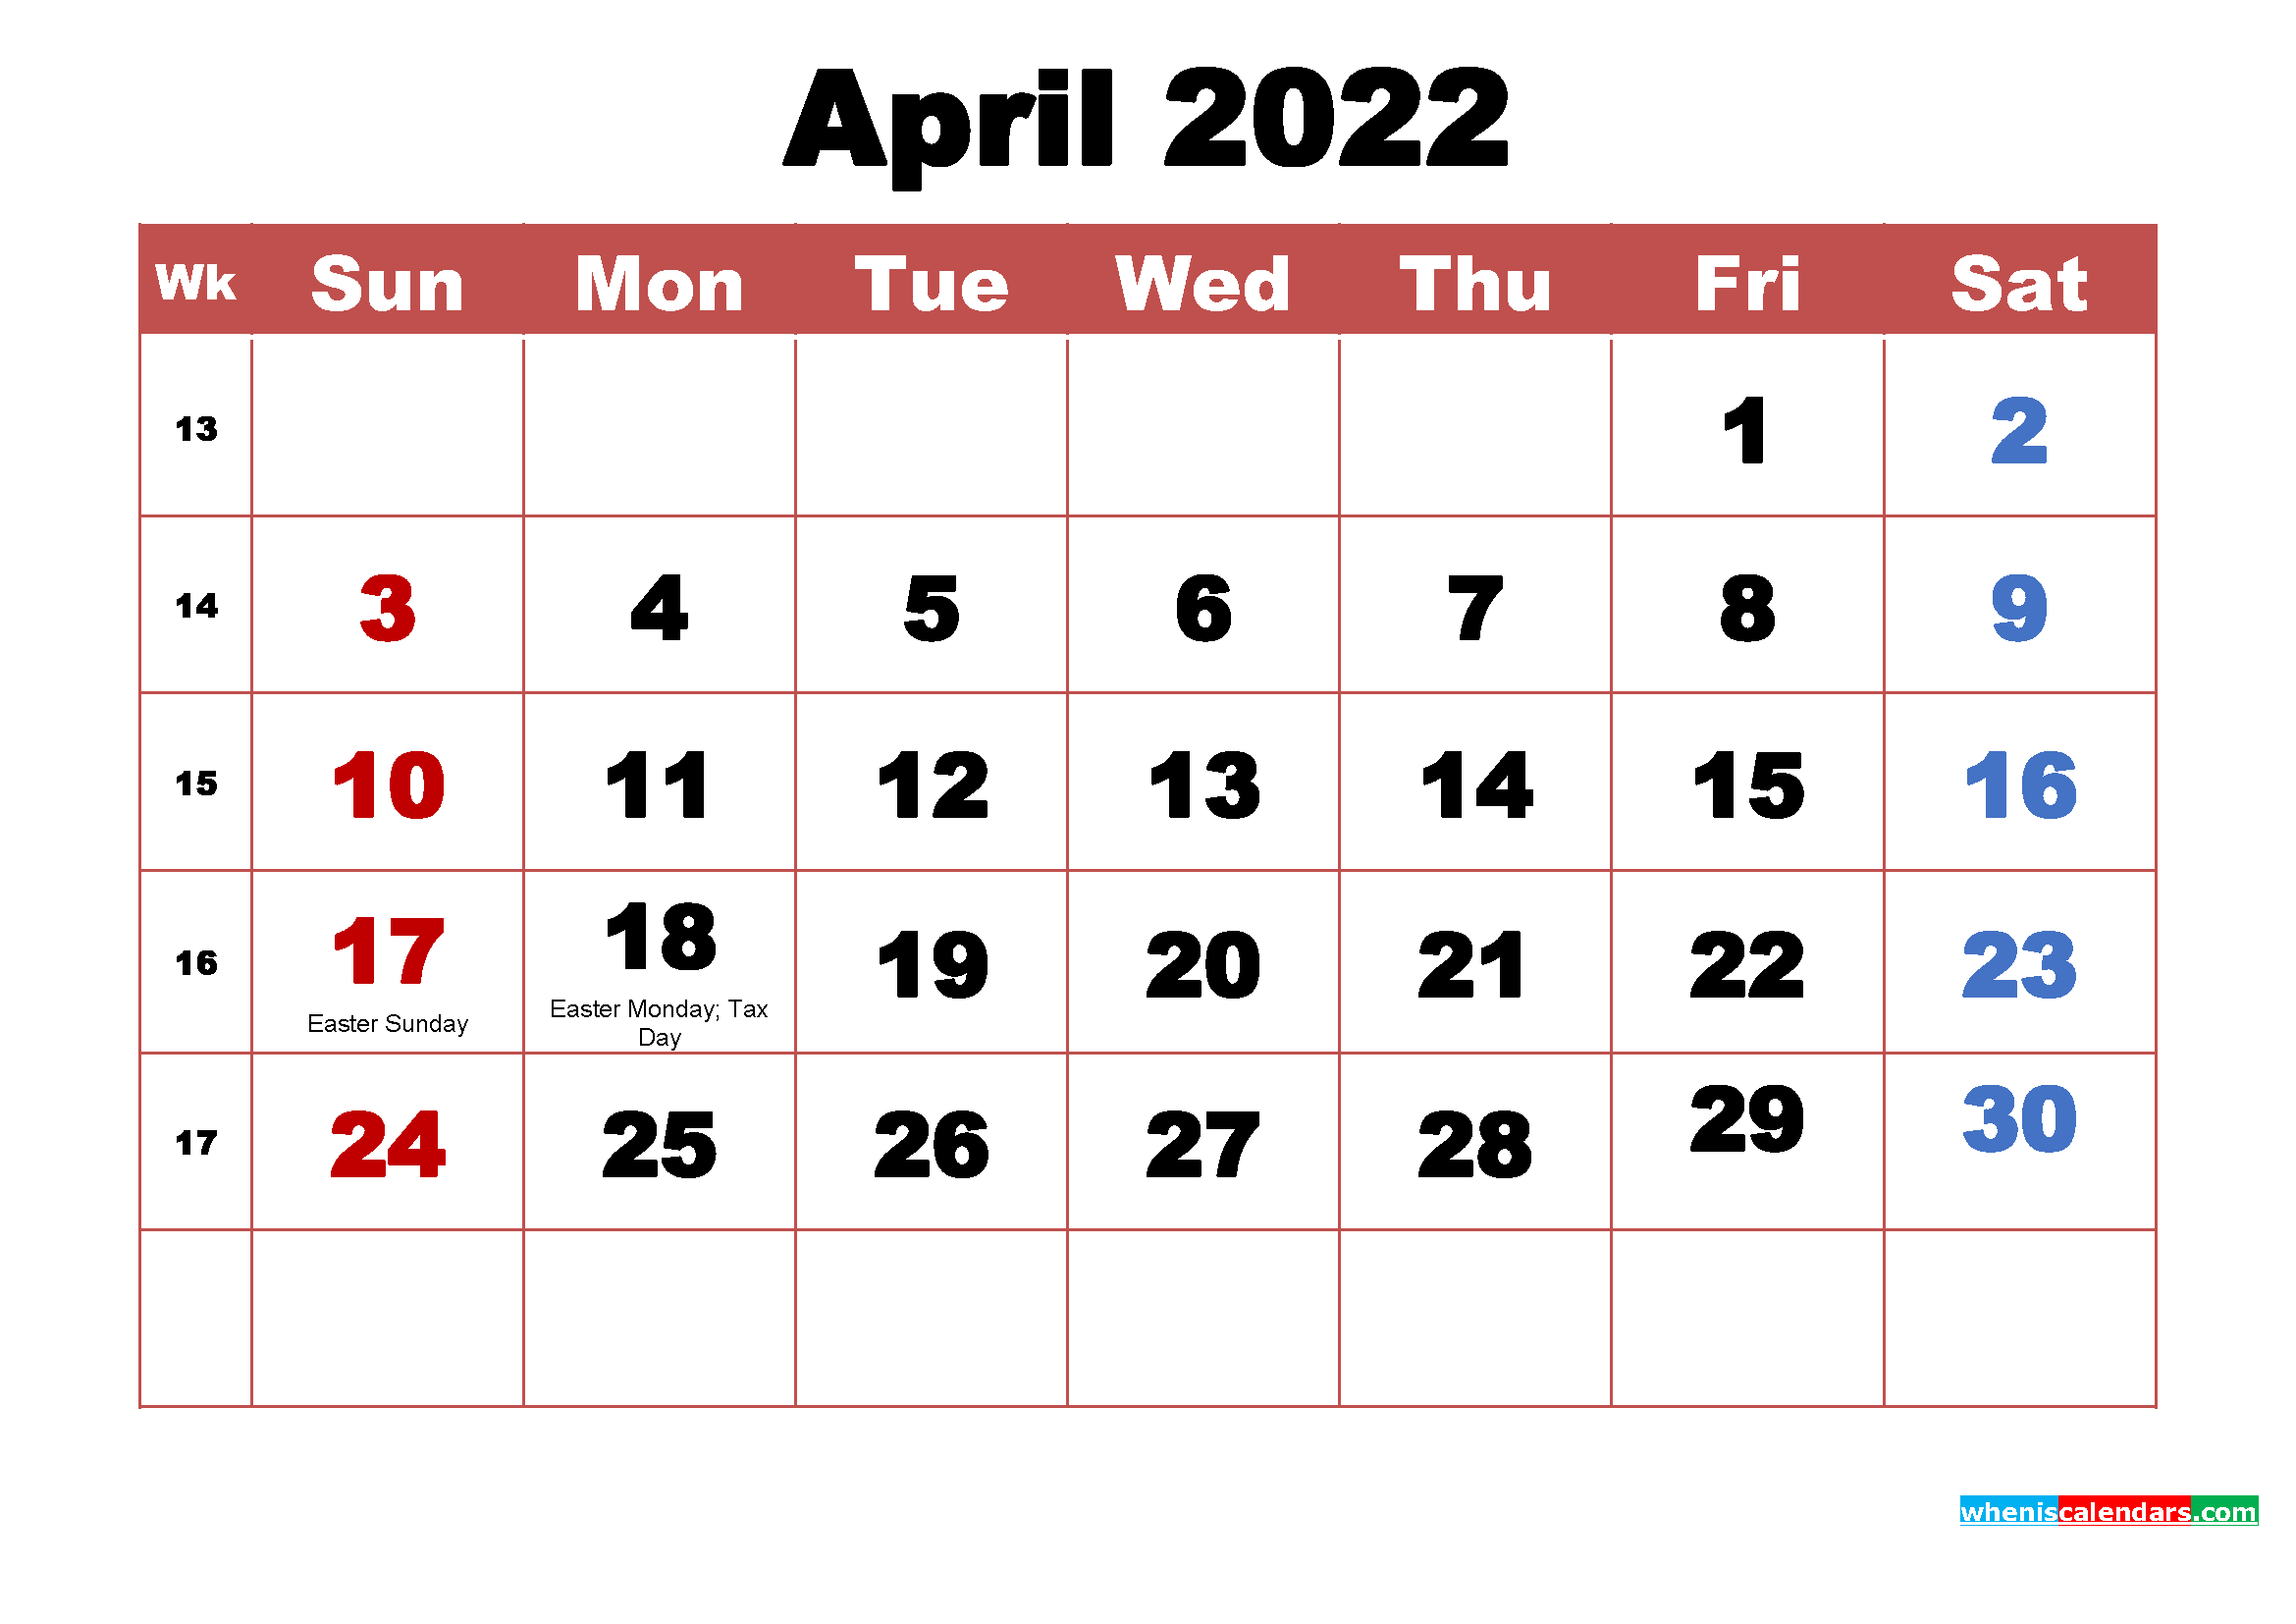 April 2022 Calendar Wallpaper High Resolution